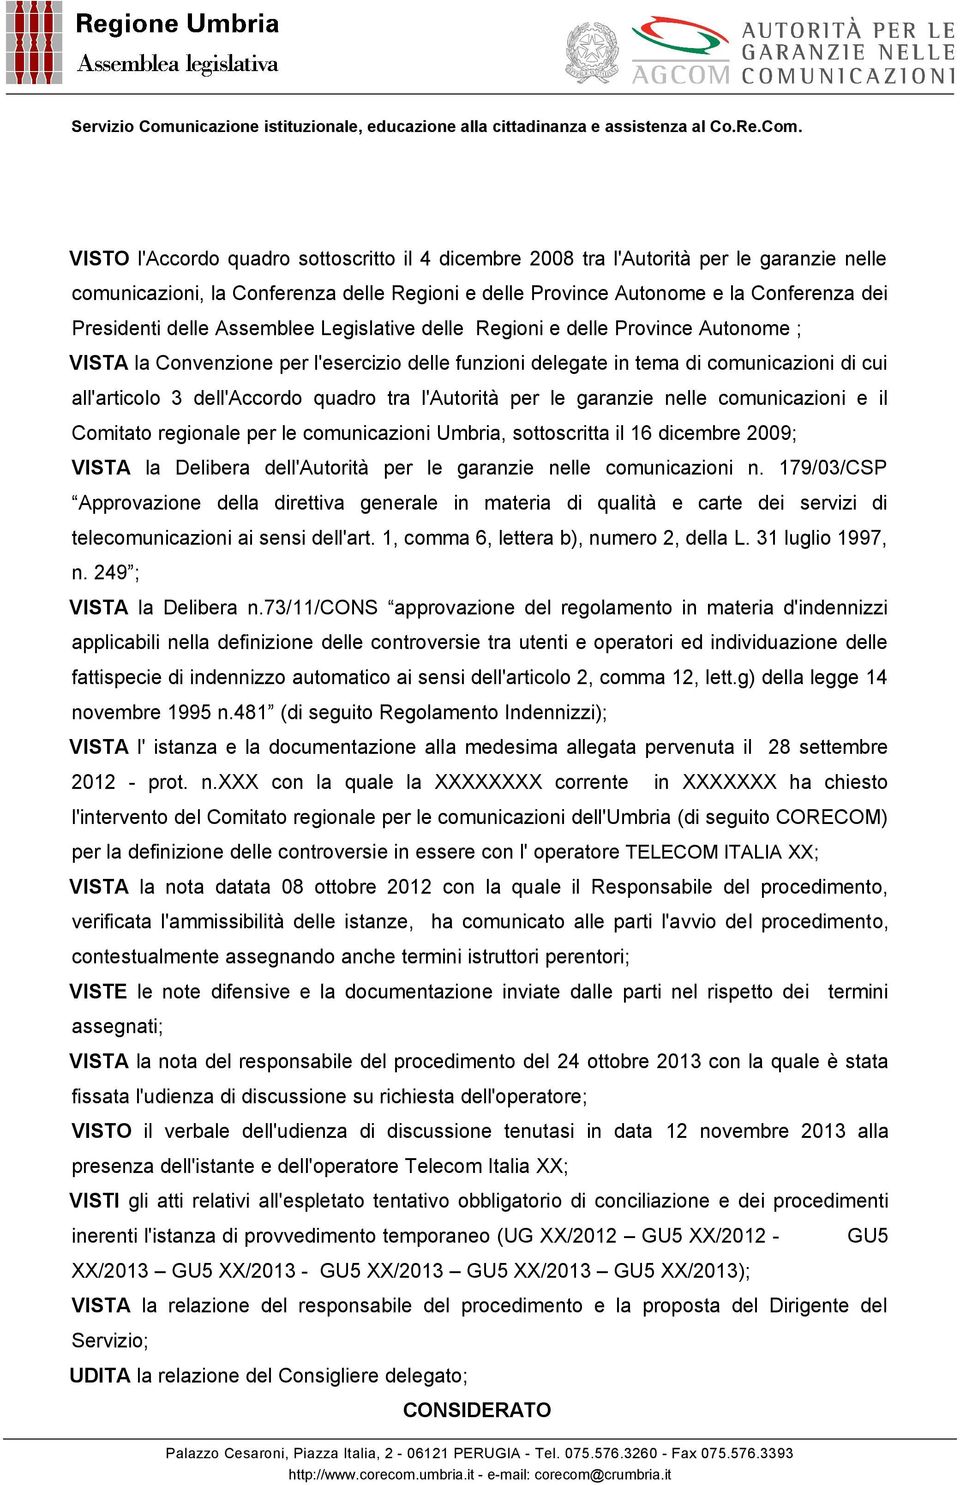 l'autorità per le garanzie nelle comunicazioni e il Comitato regionale per le comunicazioni Umbria, sottoscritta il 16 dicembre 2009; VISTA la Delibera dell'autorità per le garanzie nelle